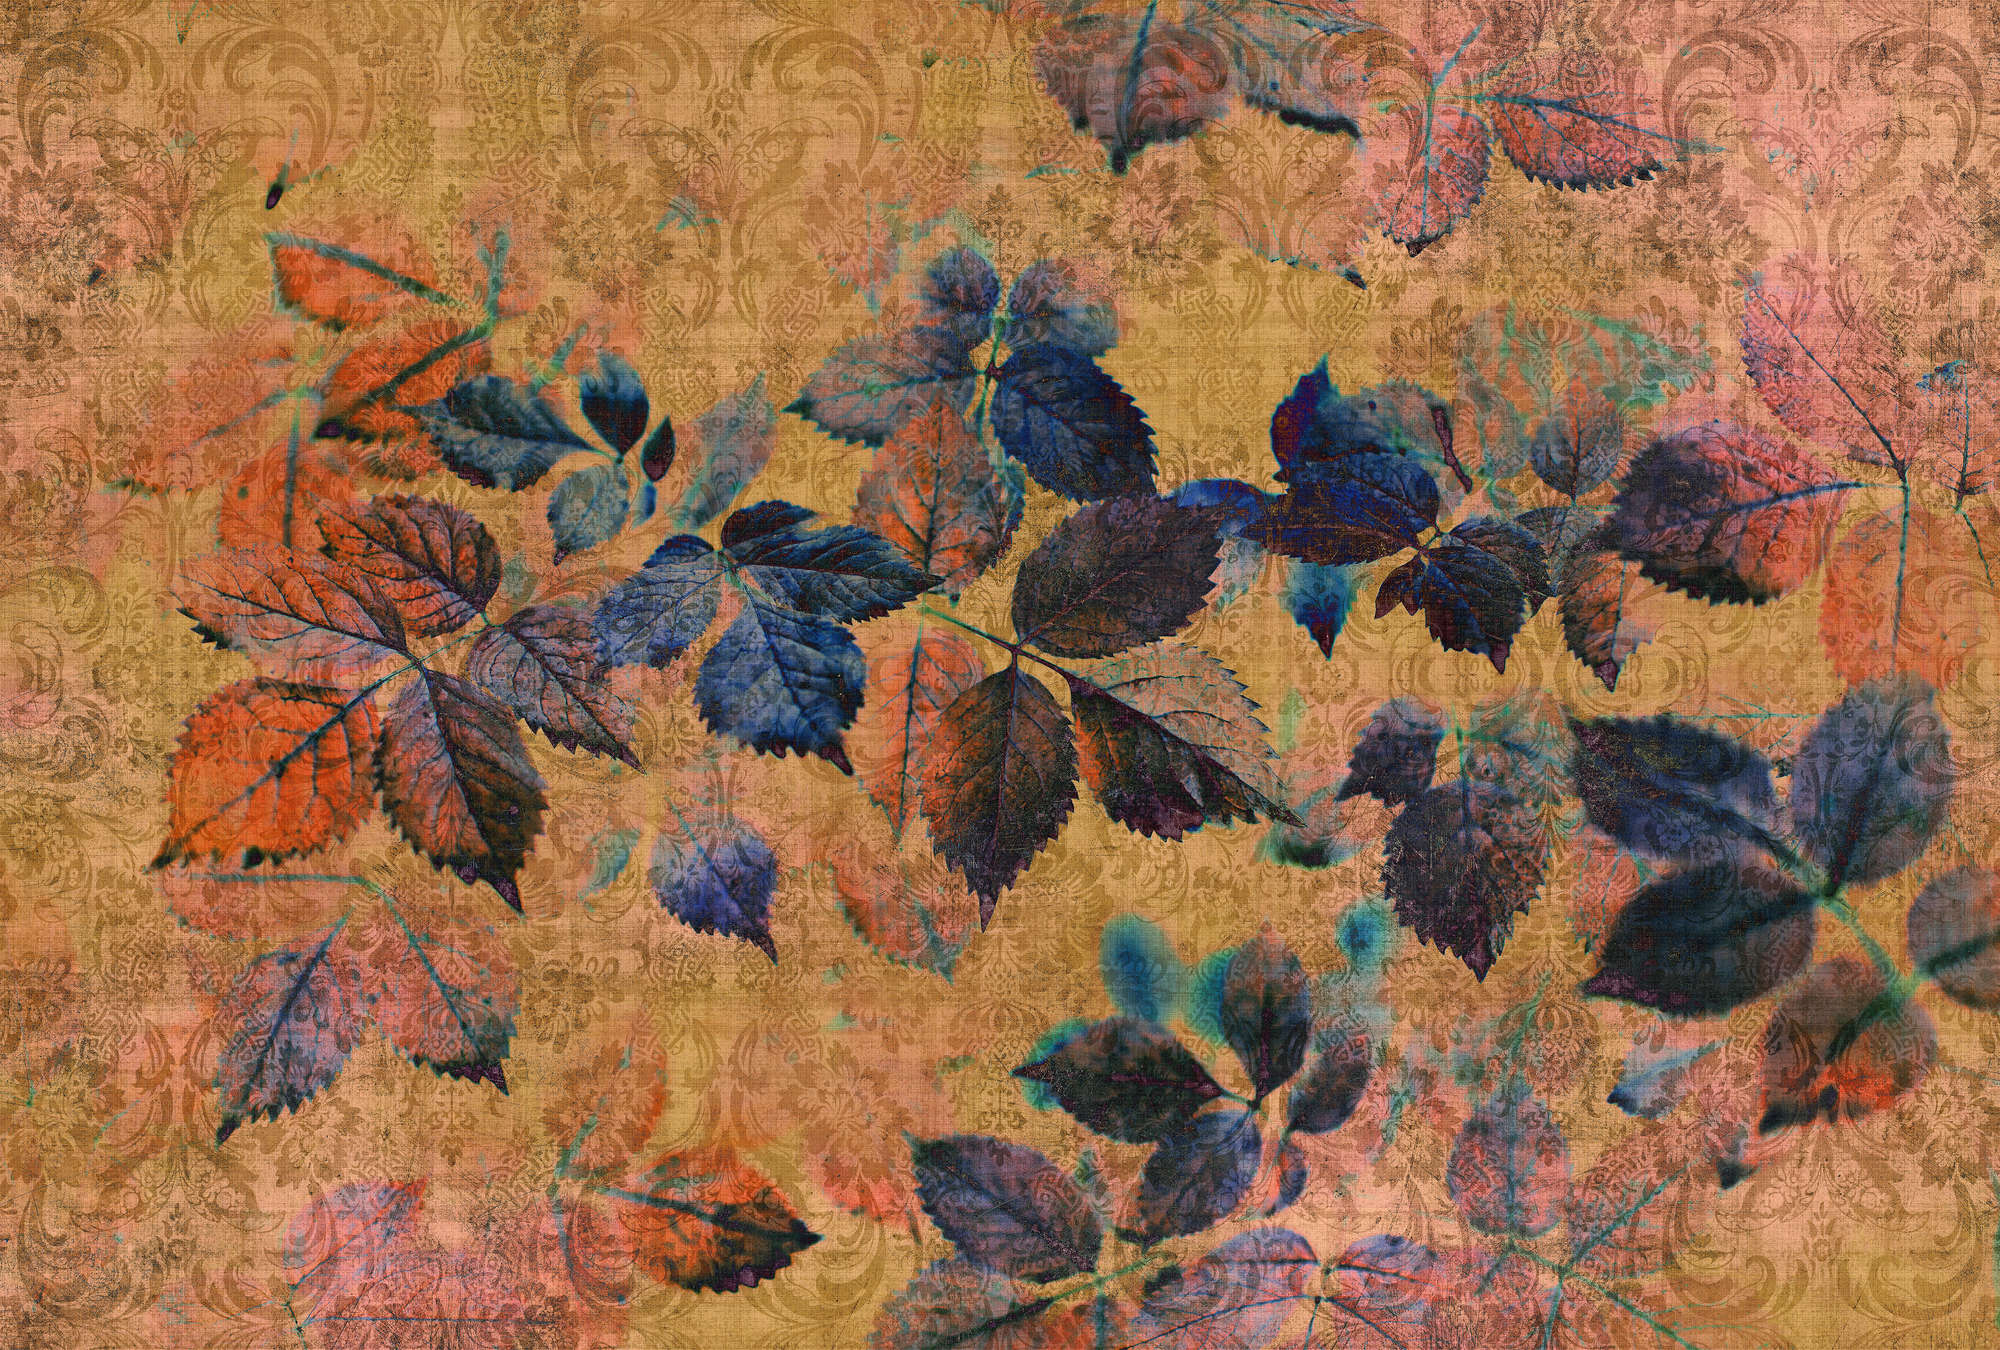             Indian summer 2 - Carta da parati floreale con struttura in lino naturale dall'atmosfera calda - Giallo, arancione | Vello liscio opaco
        